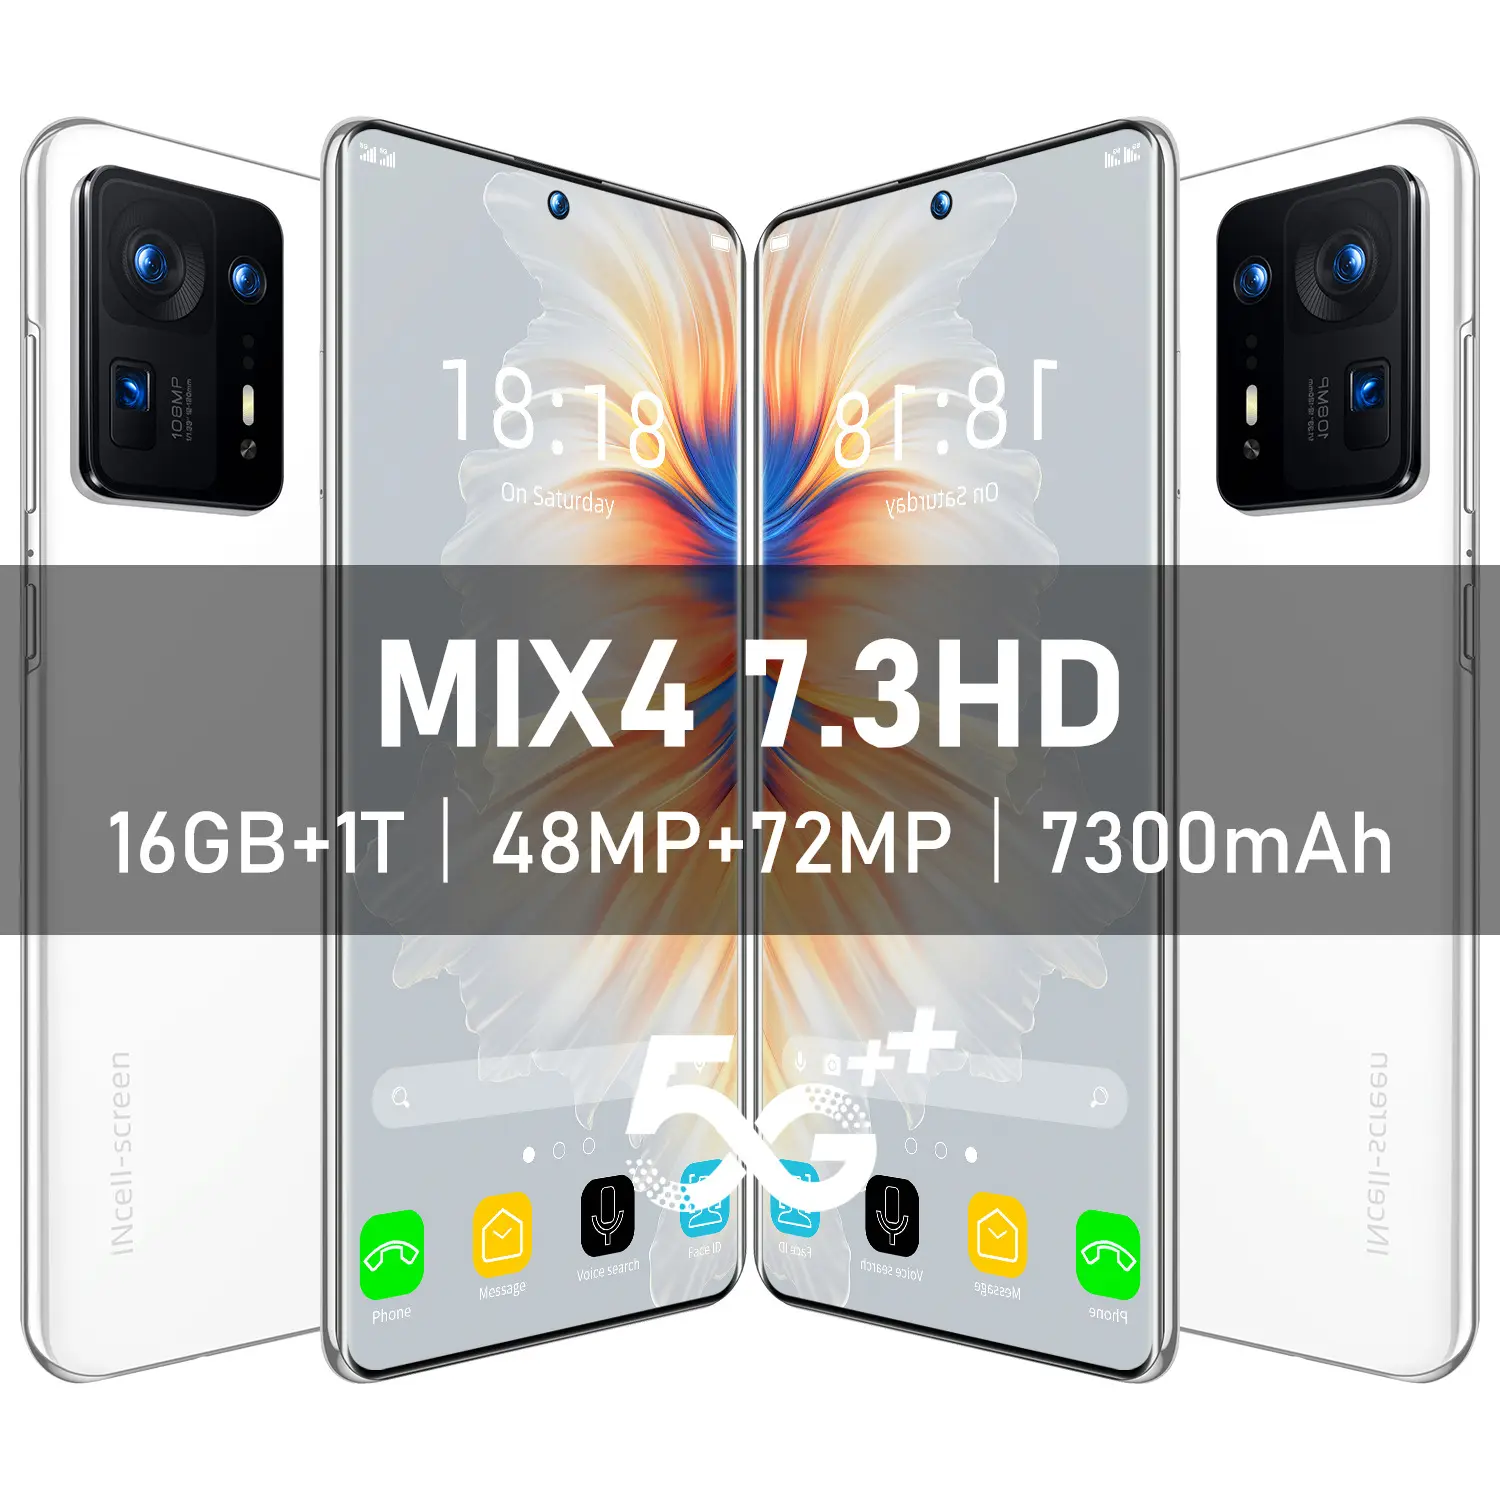 Ponsel Lintas Batas MIX4 Harga Murah 7.3 "True Perforasi Layar Besar Definisi Tinggi Android 8.1 Terjual 8 Juta Piksel